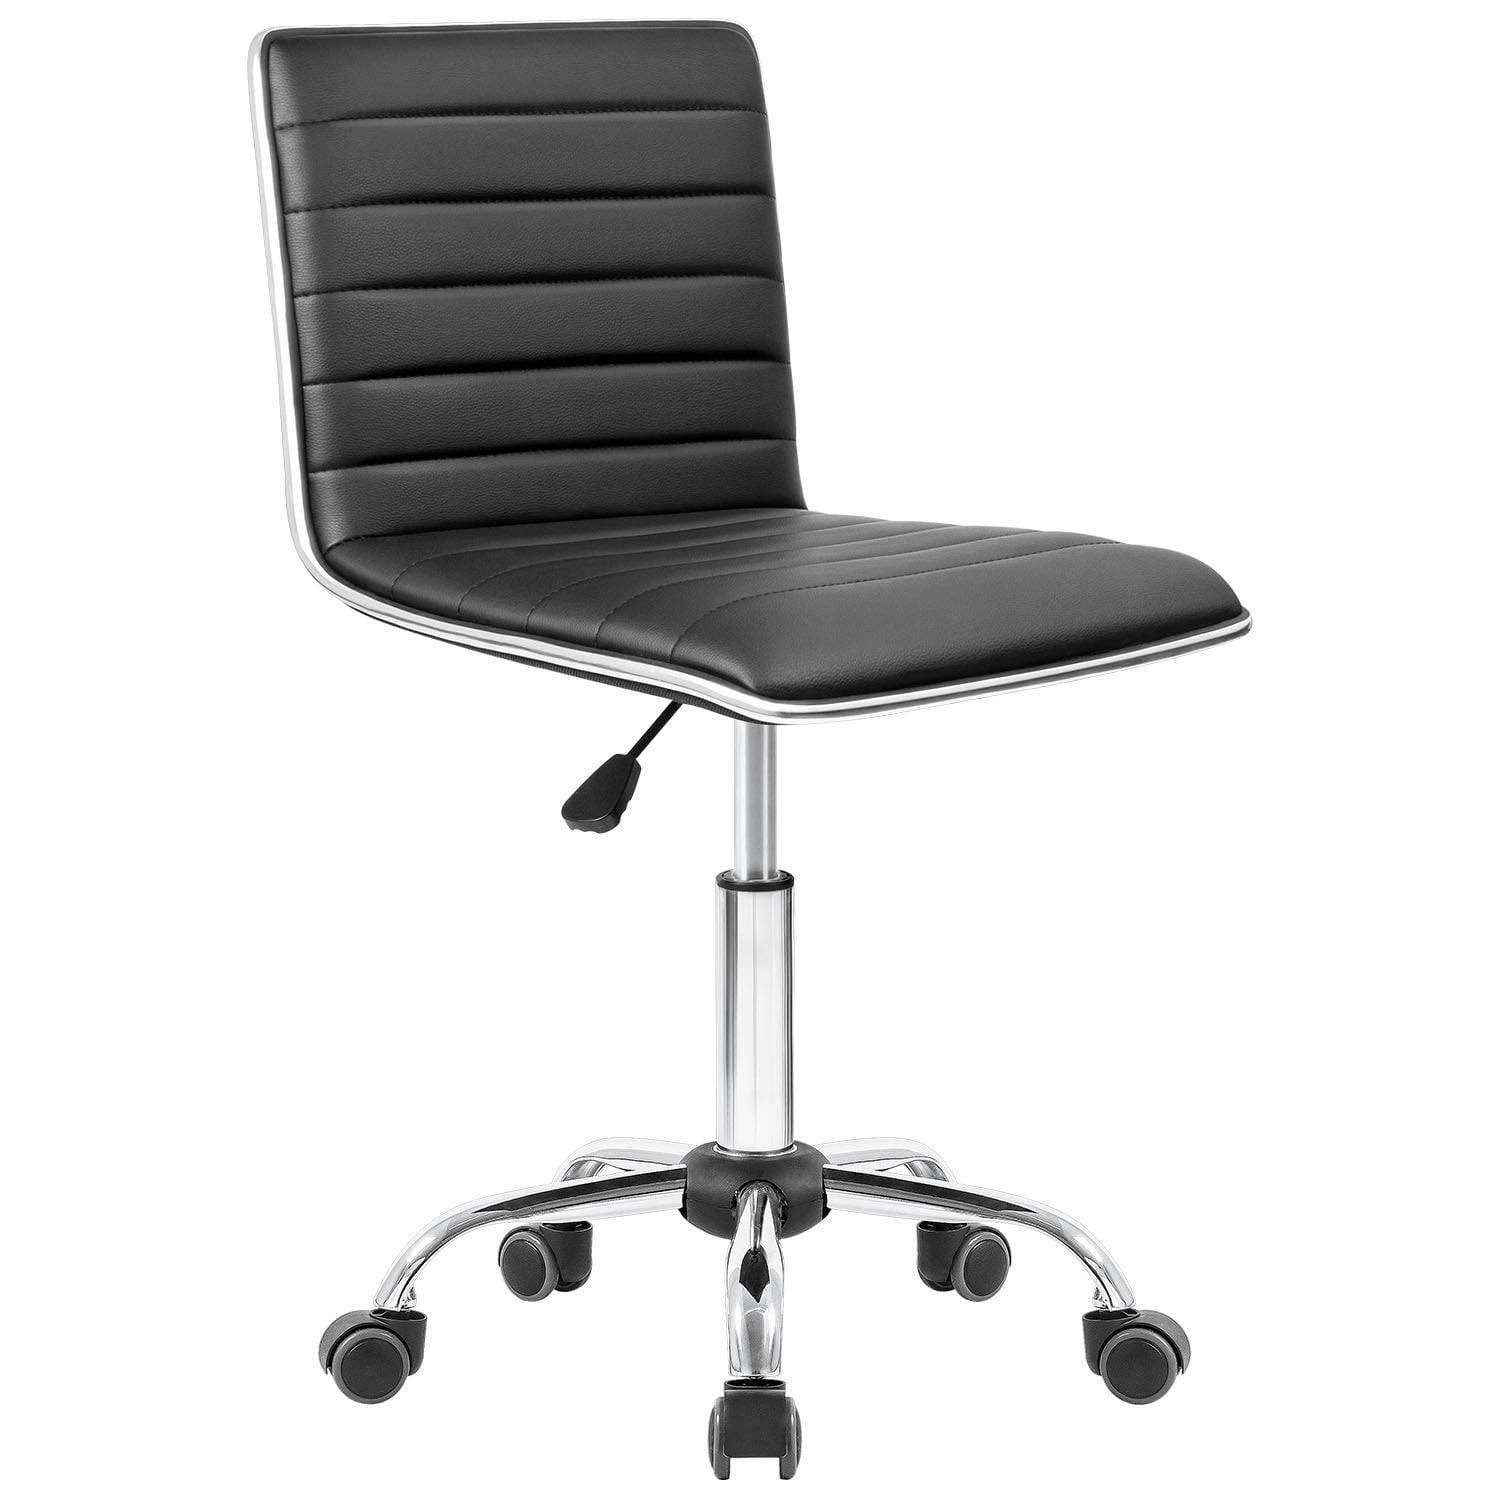 Armless Black Mid-Back Task Office Chair PU Leather Height Adjustable Swivel US 